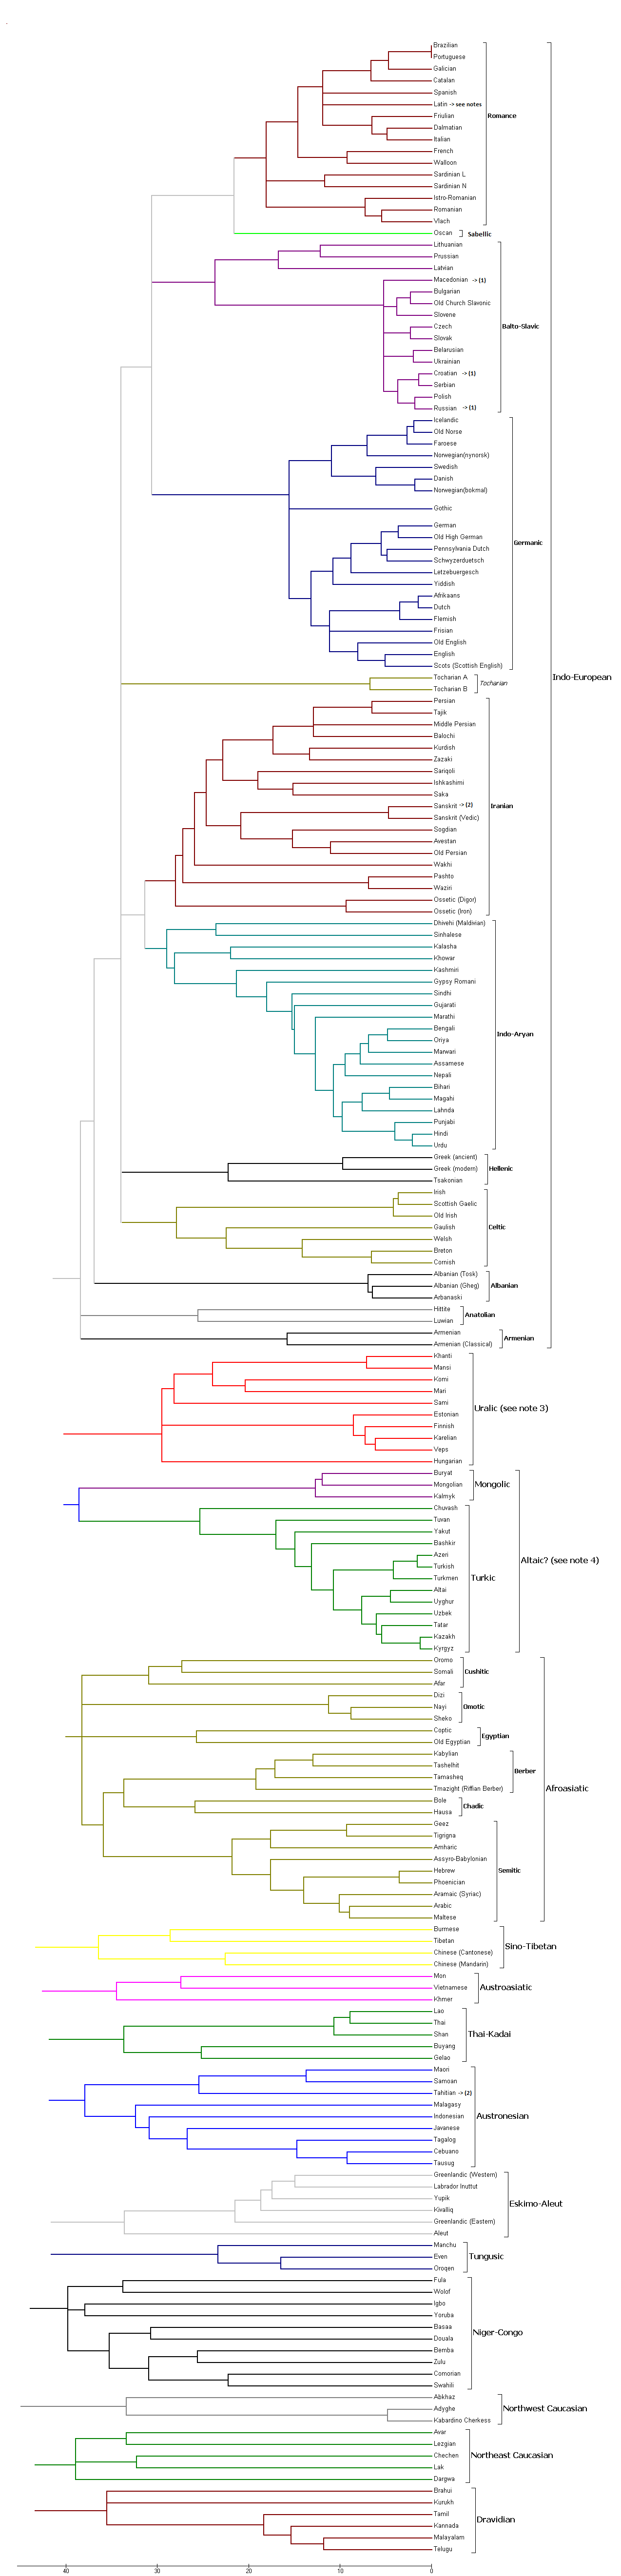 Language evolutionary tree